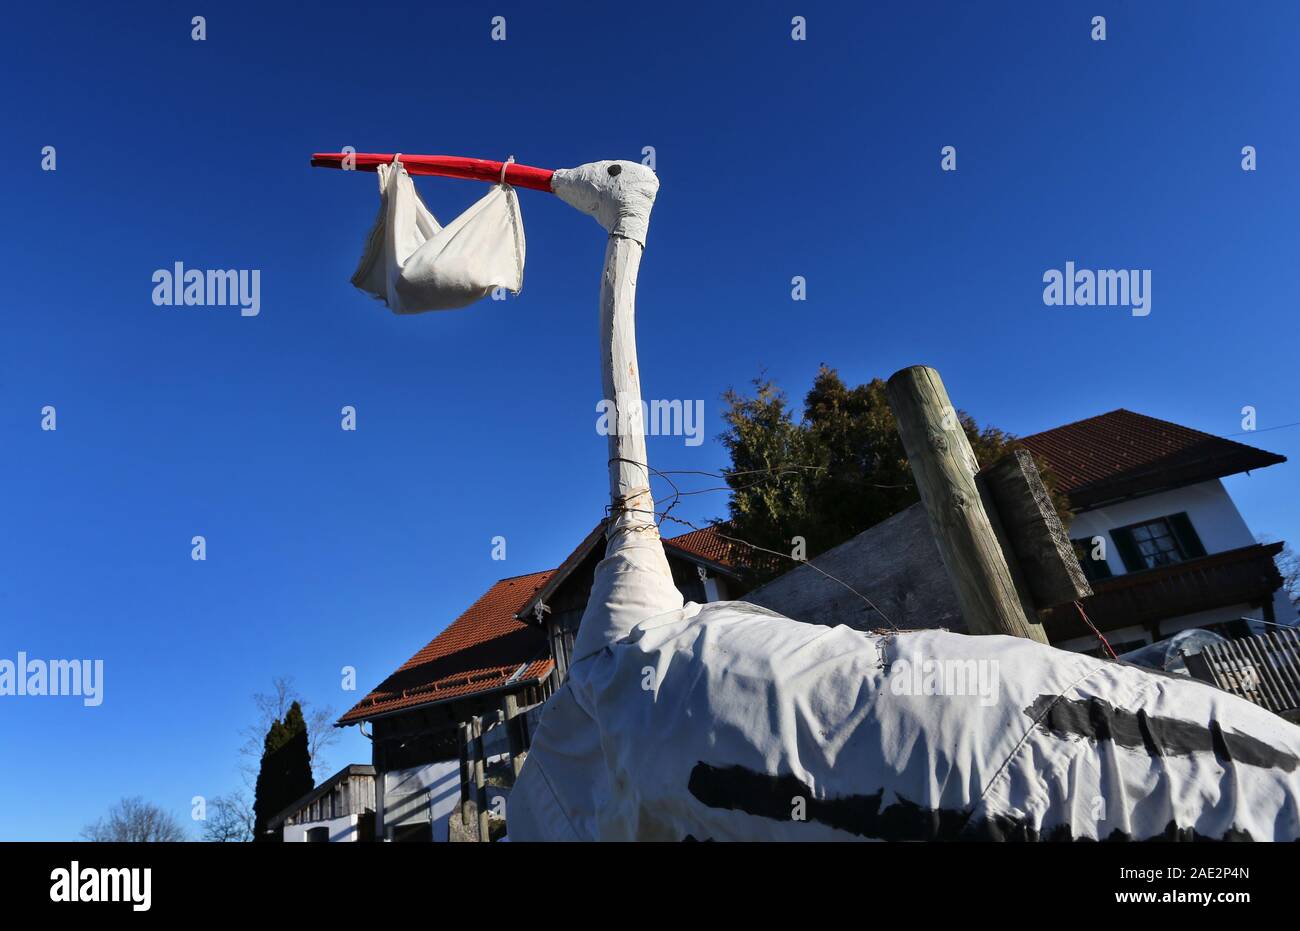 Buching, Allemagne. 06 Dec, 2019. Une cigogne maison figure avec un sac dans son bec symbolise la naissance d'un bébé en face d'une ferme. Credit : Karl-Josef Opim/dpa/Alamy Live News Banque D'Images